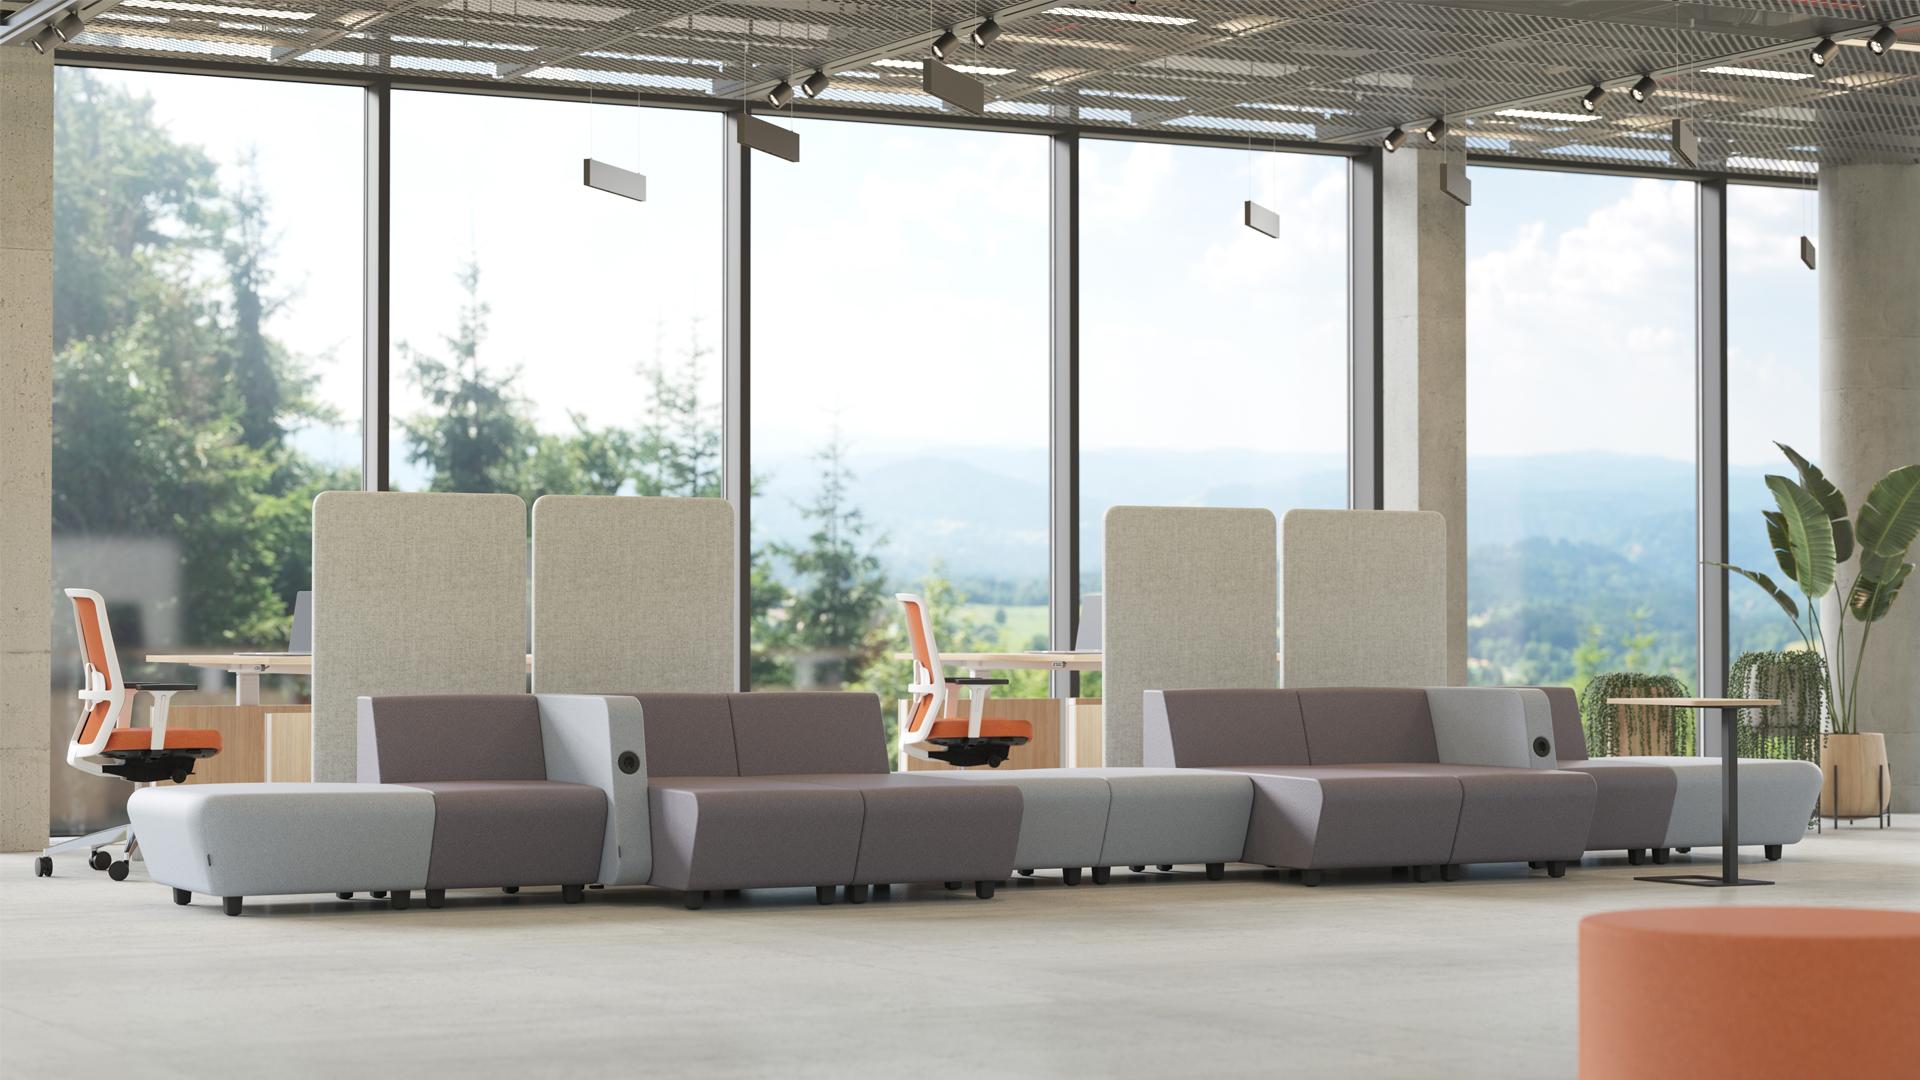 meble biurowe- sofy systemowe, panele akustyczne, biurka regulowane, ergonomiczne krzesła obrotowe w open space